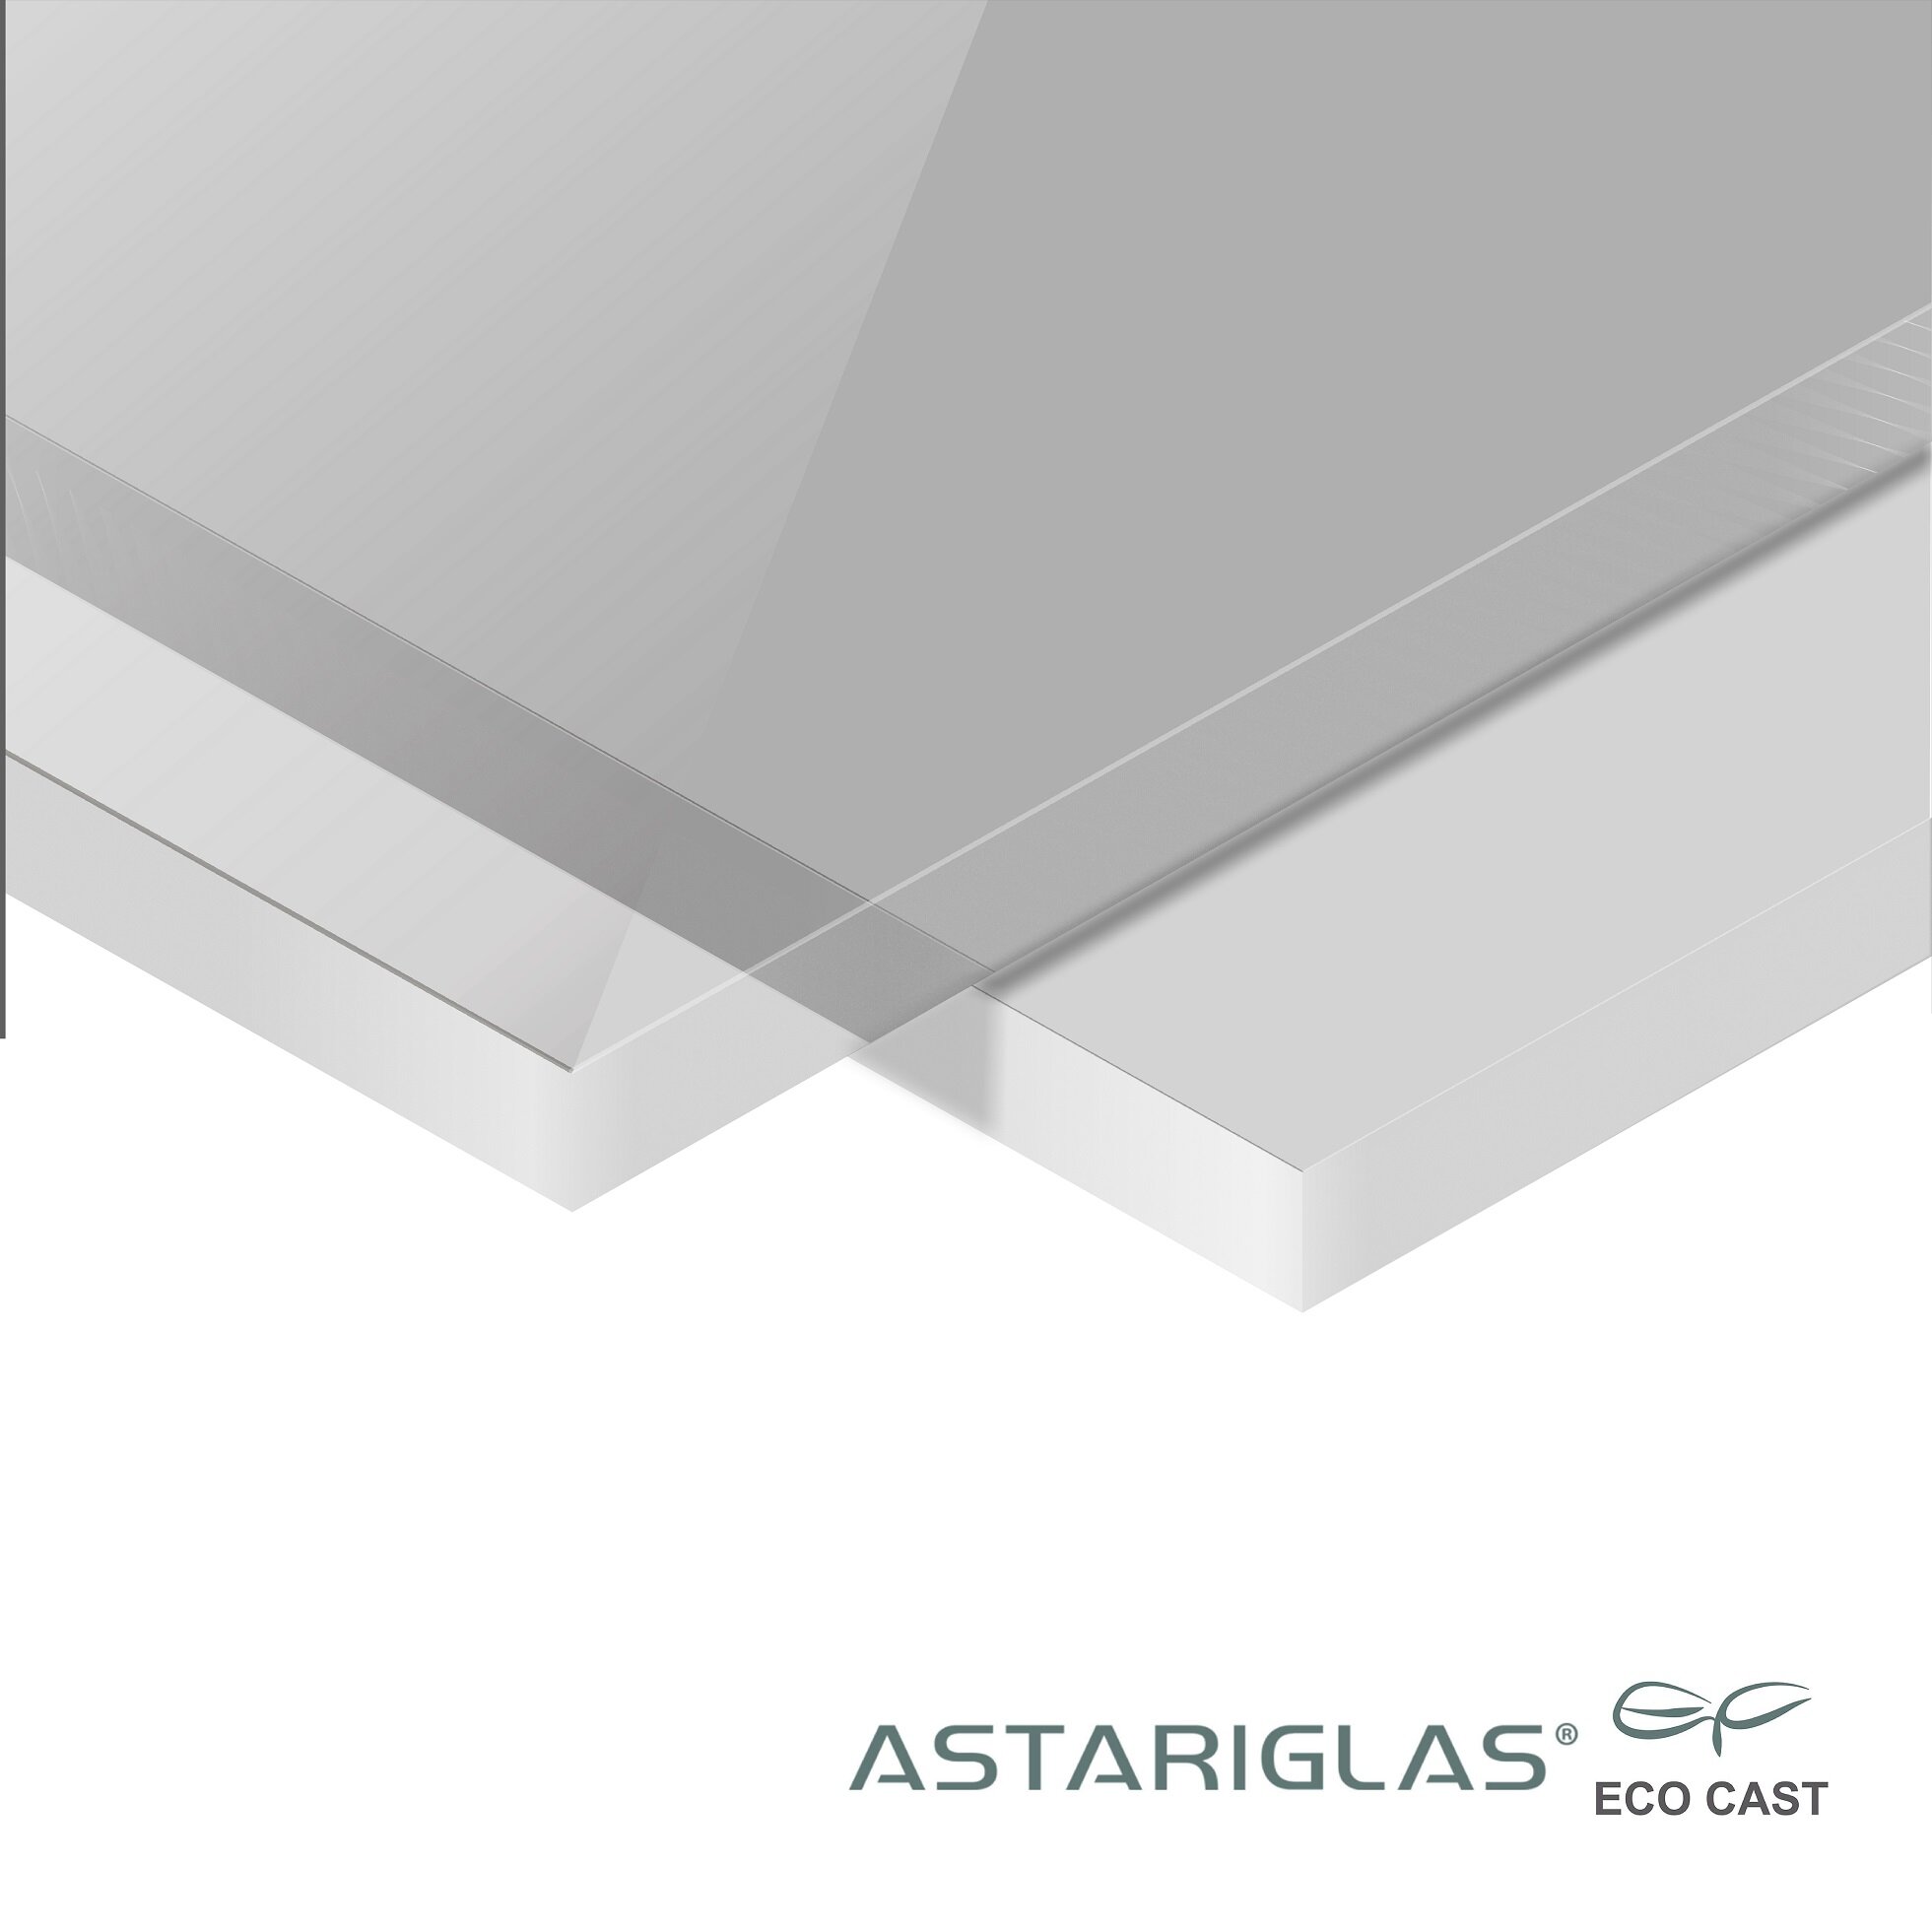 PMMA Eco Cast 019DS wit opaal LT72% Astariglas mat/mat